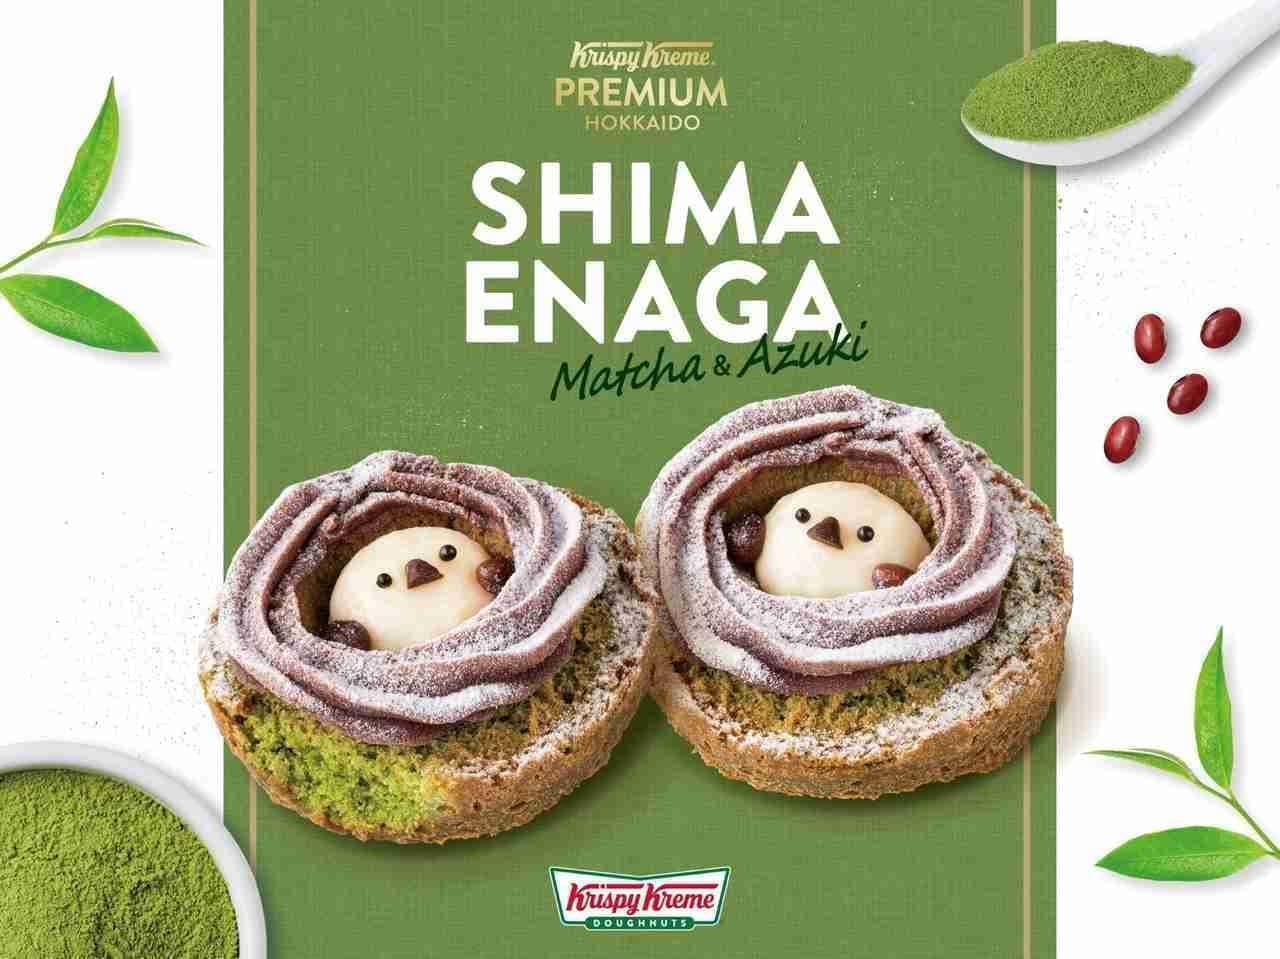 Krispy Kreme Doughnuts "Krispy Kreme Premium Hokkaido Shimaenaga Matcha & Azuki".